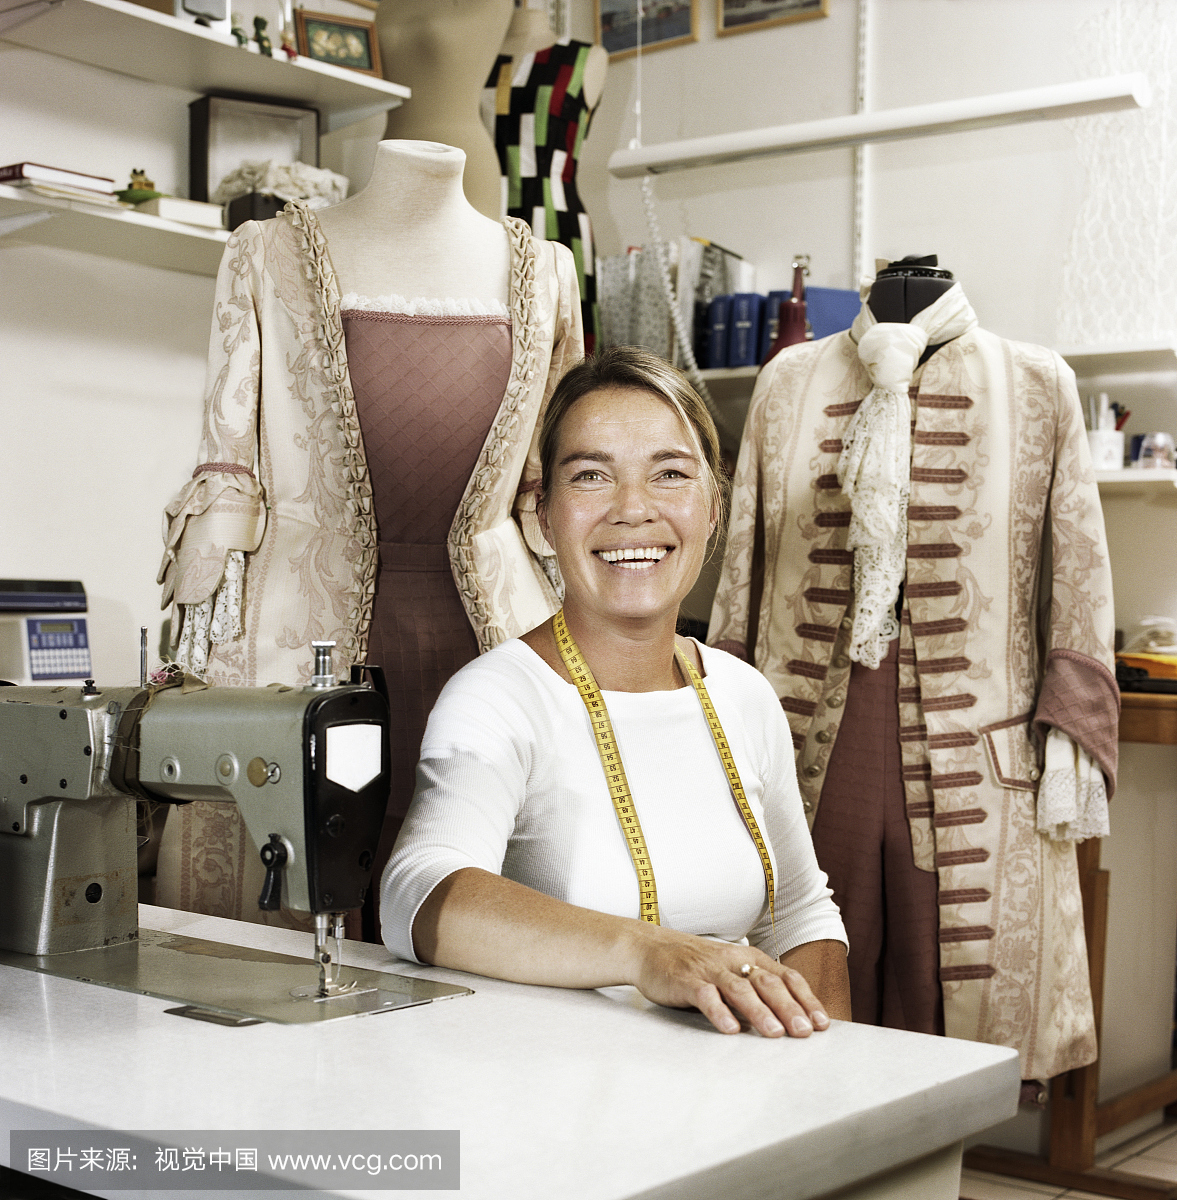 女裁缝机坐在缝纫机,微笑,肖像